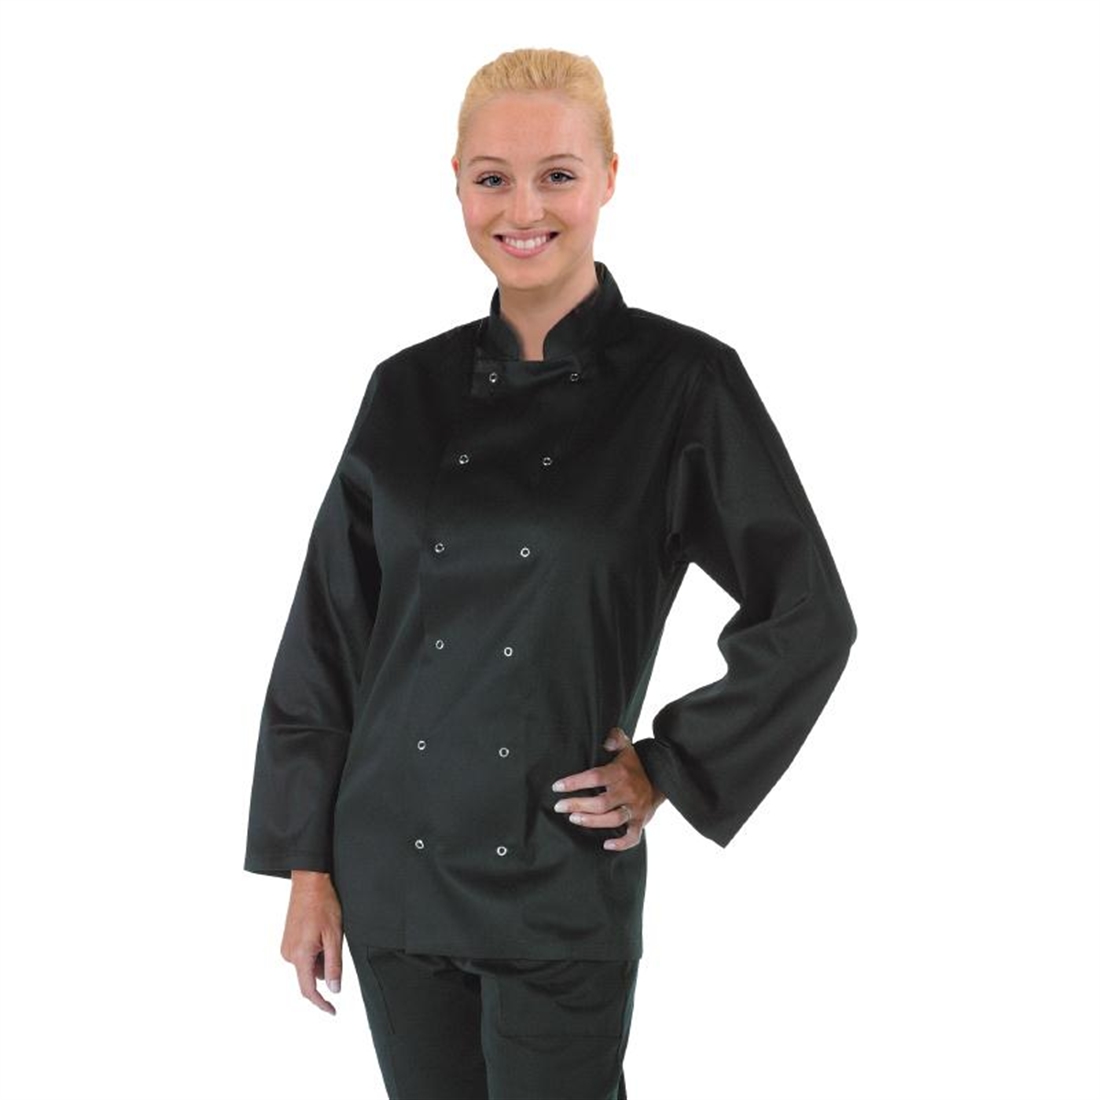 Whites Vegas Chef Jacket Long Sleeve Black - XL